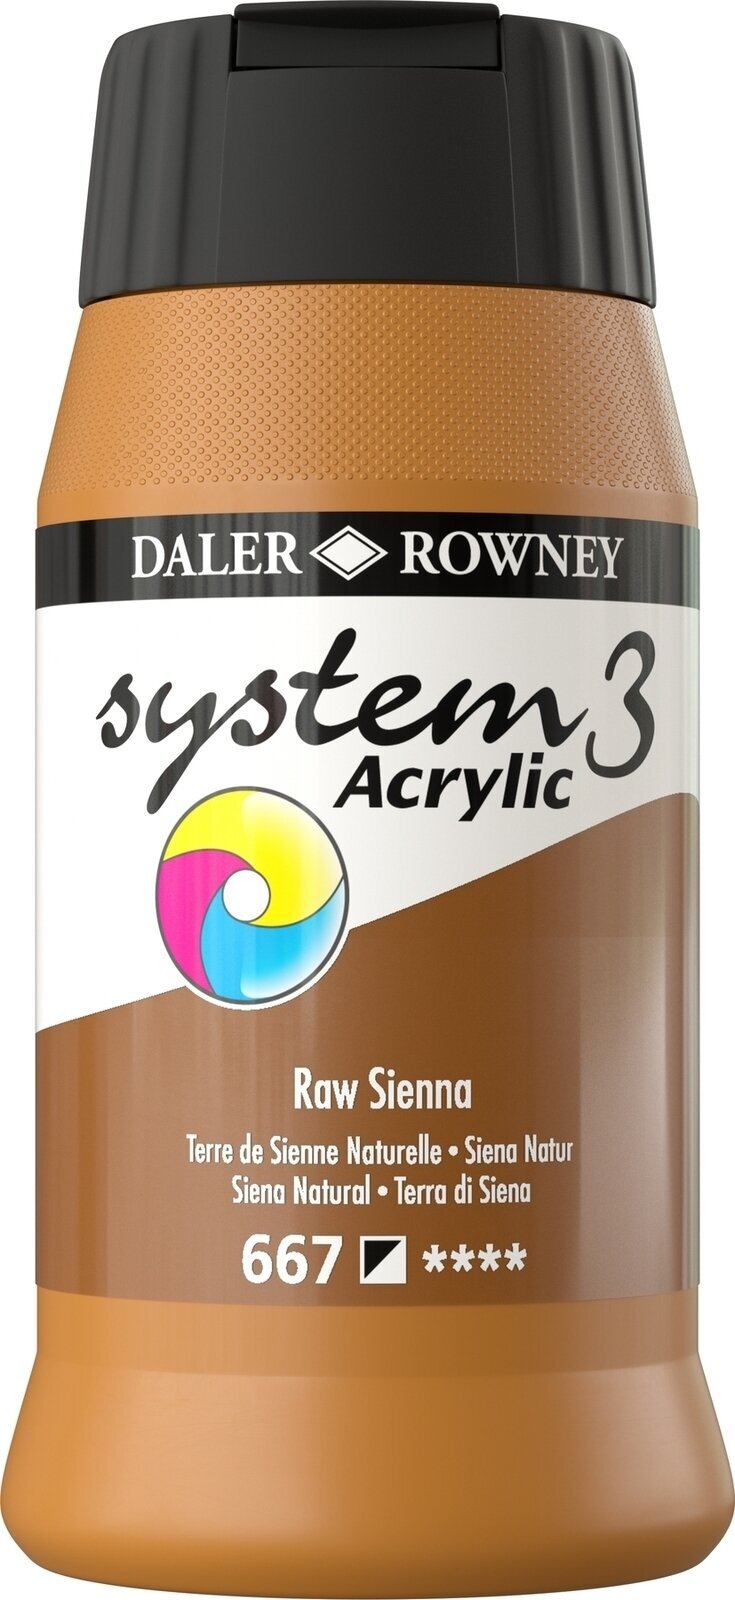 Akrylmaling Daler Rowney System3 Akrylmaling Raw Sienna 500 ml 1 stk.